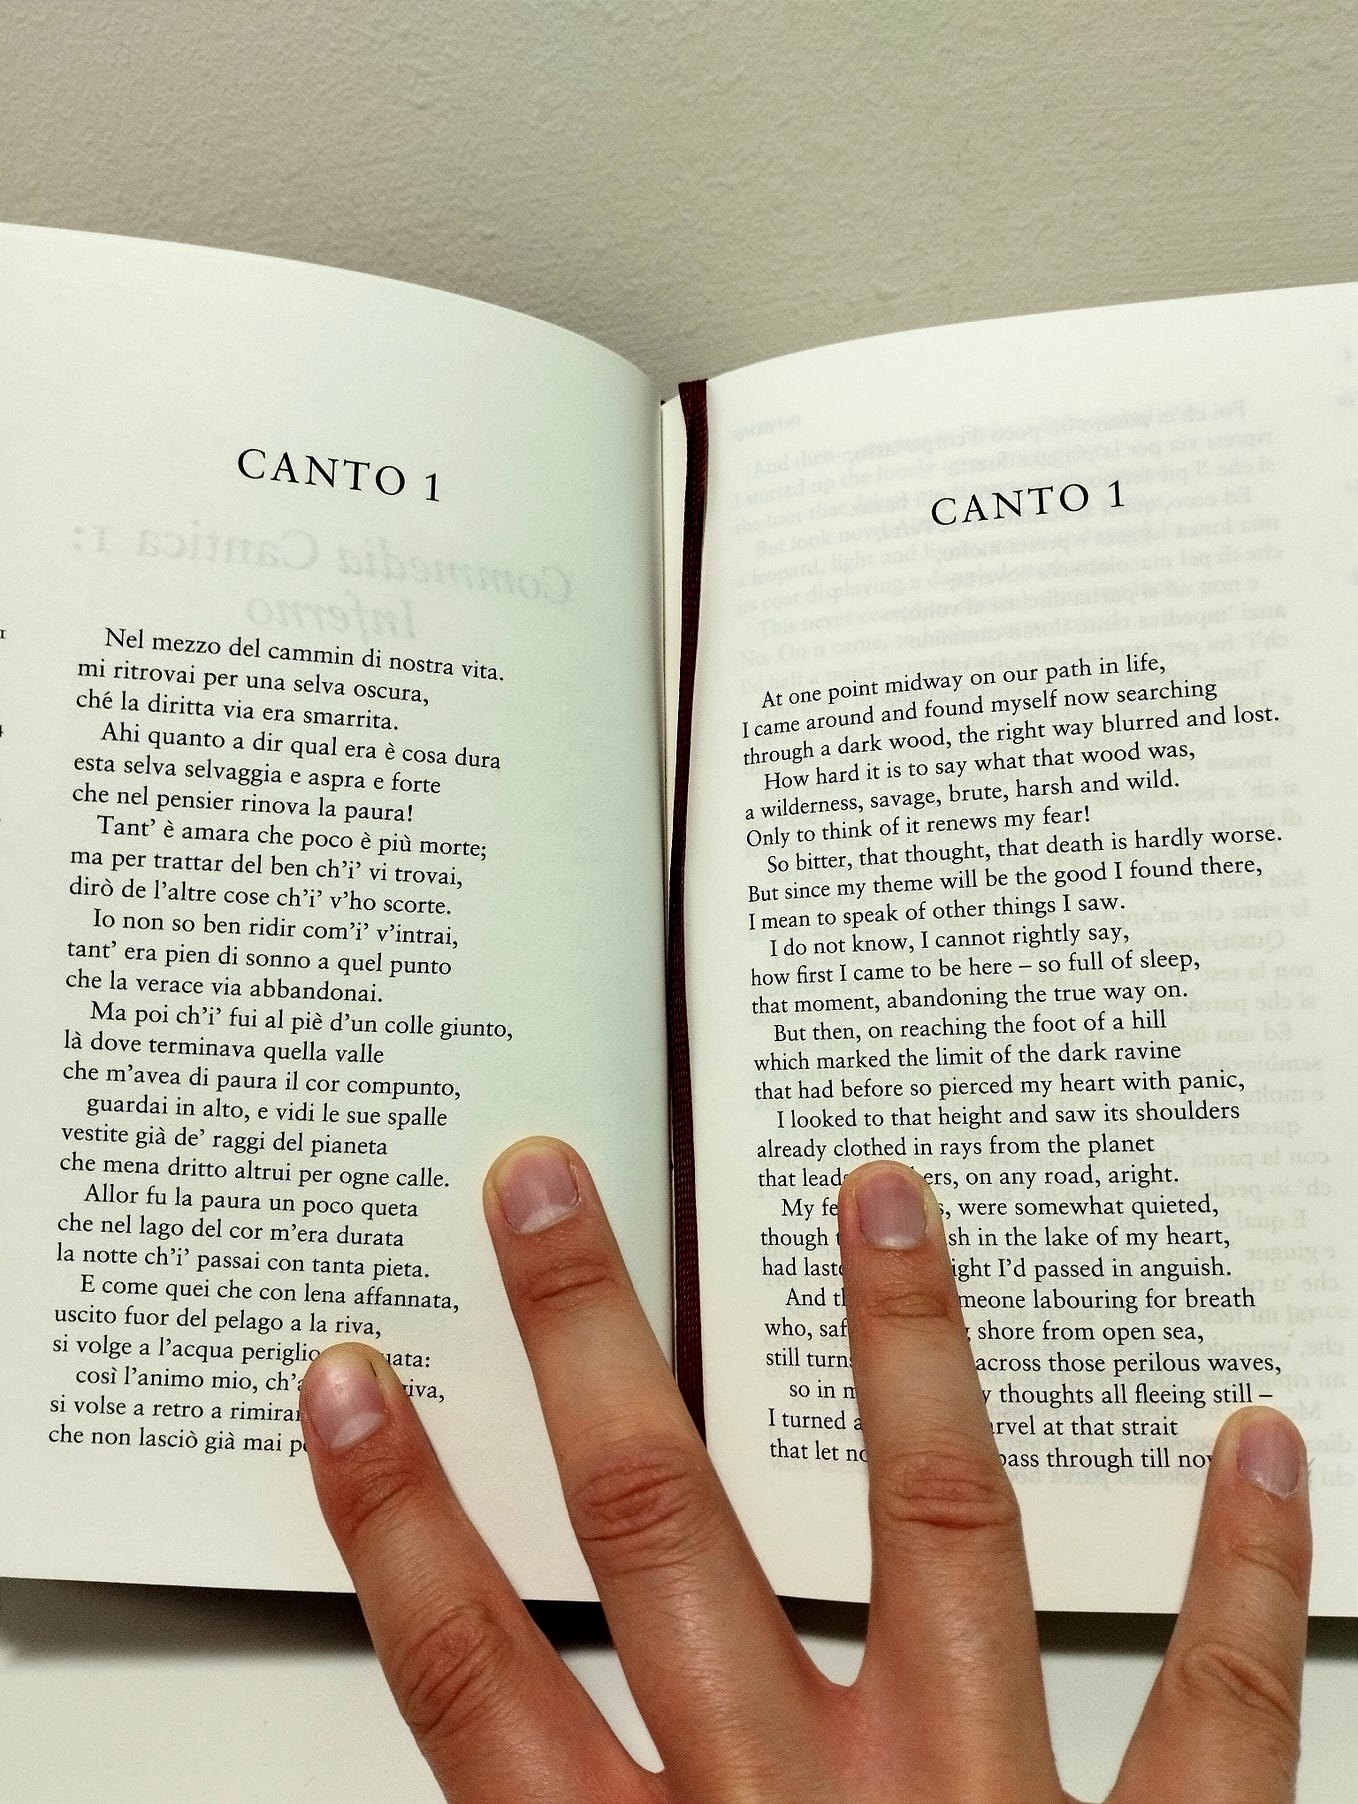 Dante's Inferno: Canto II